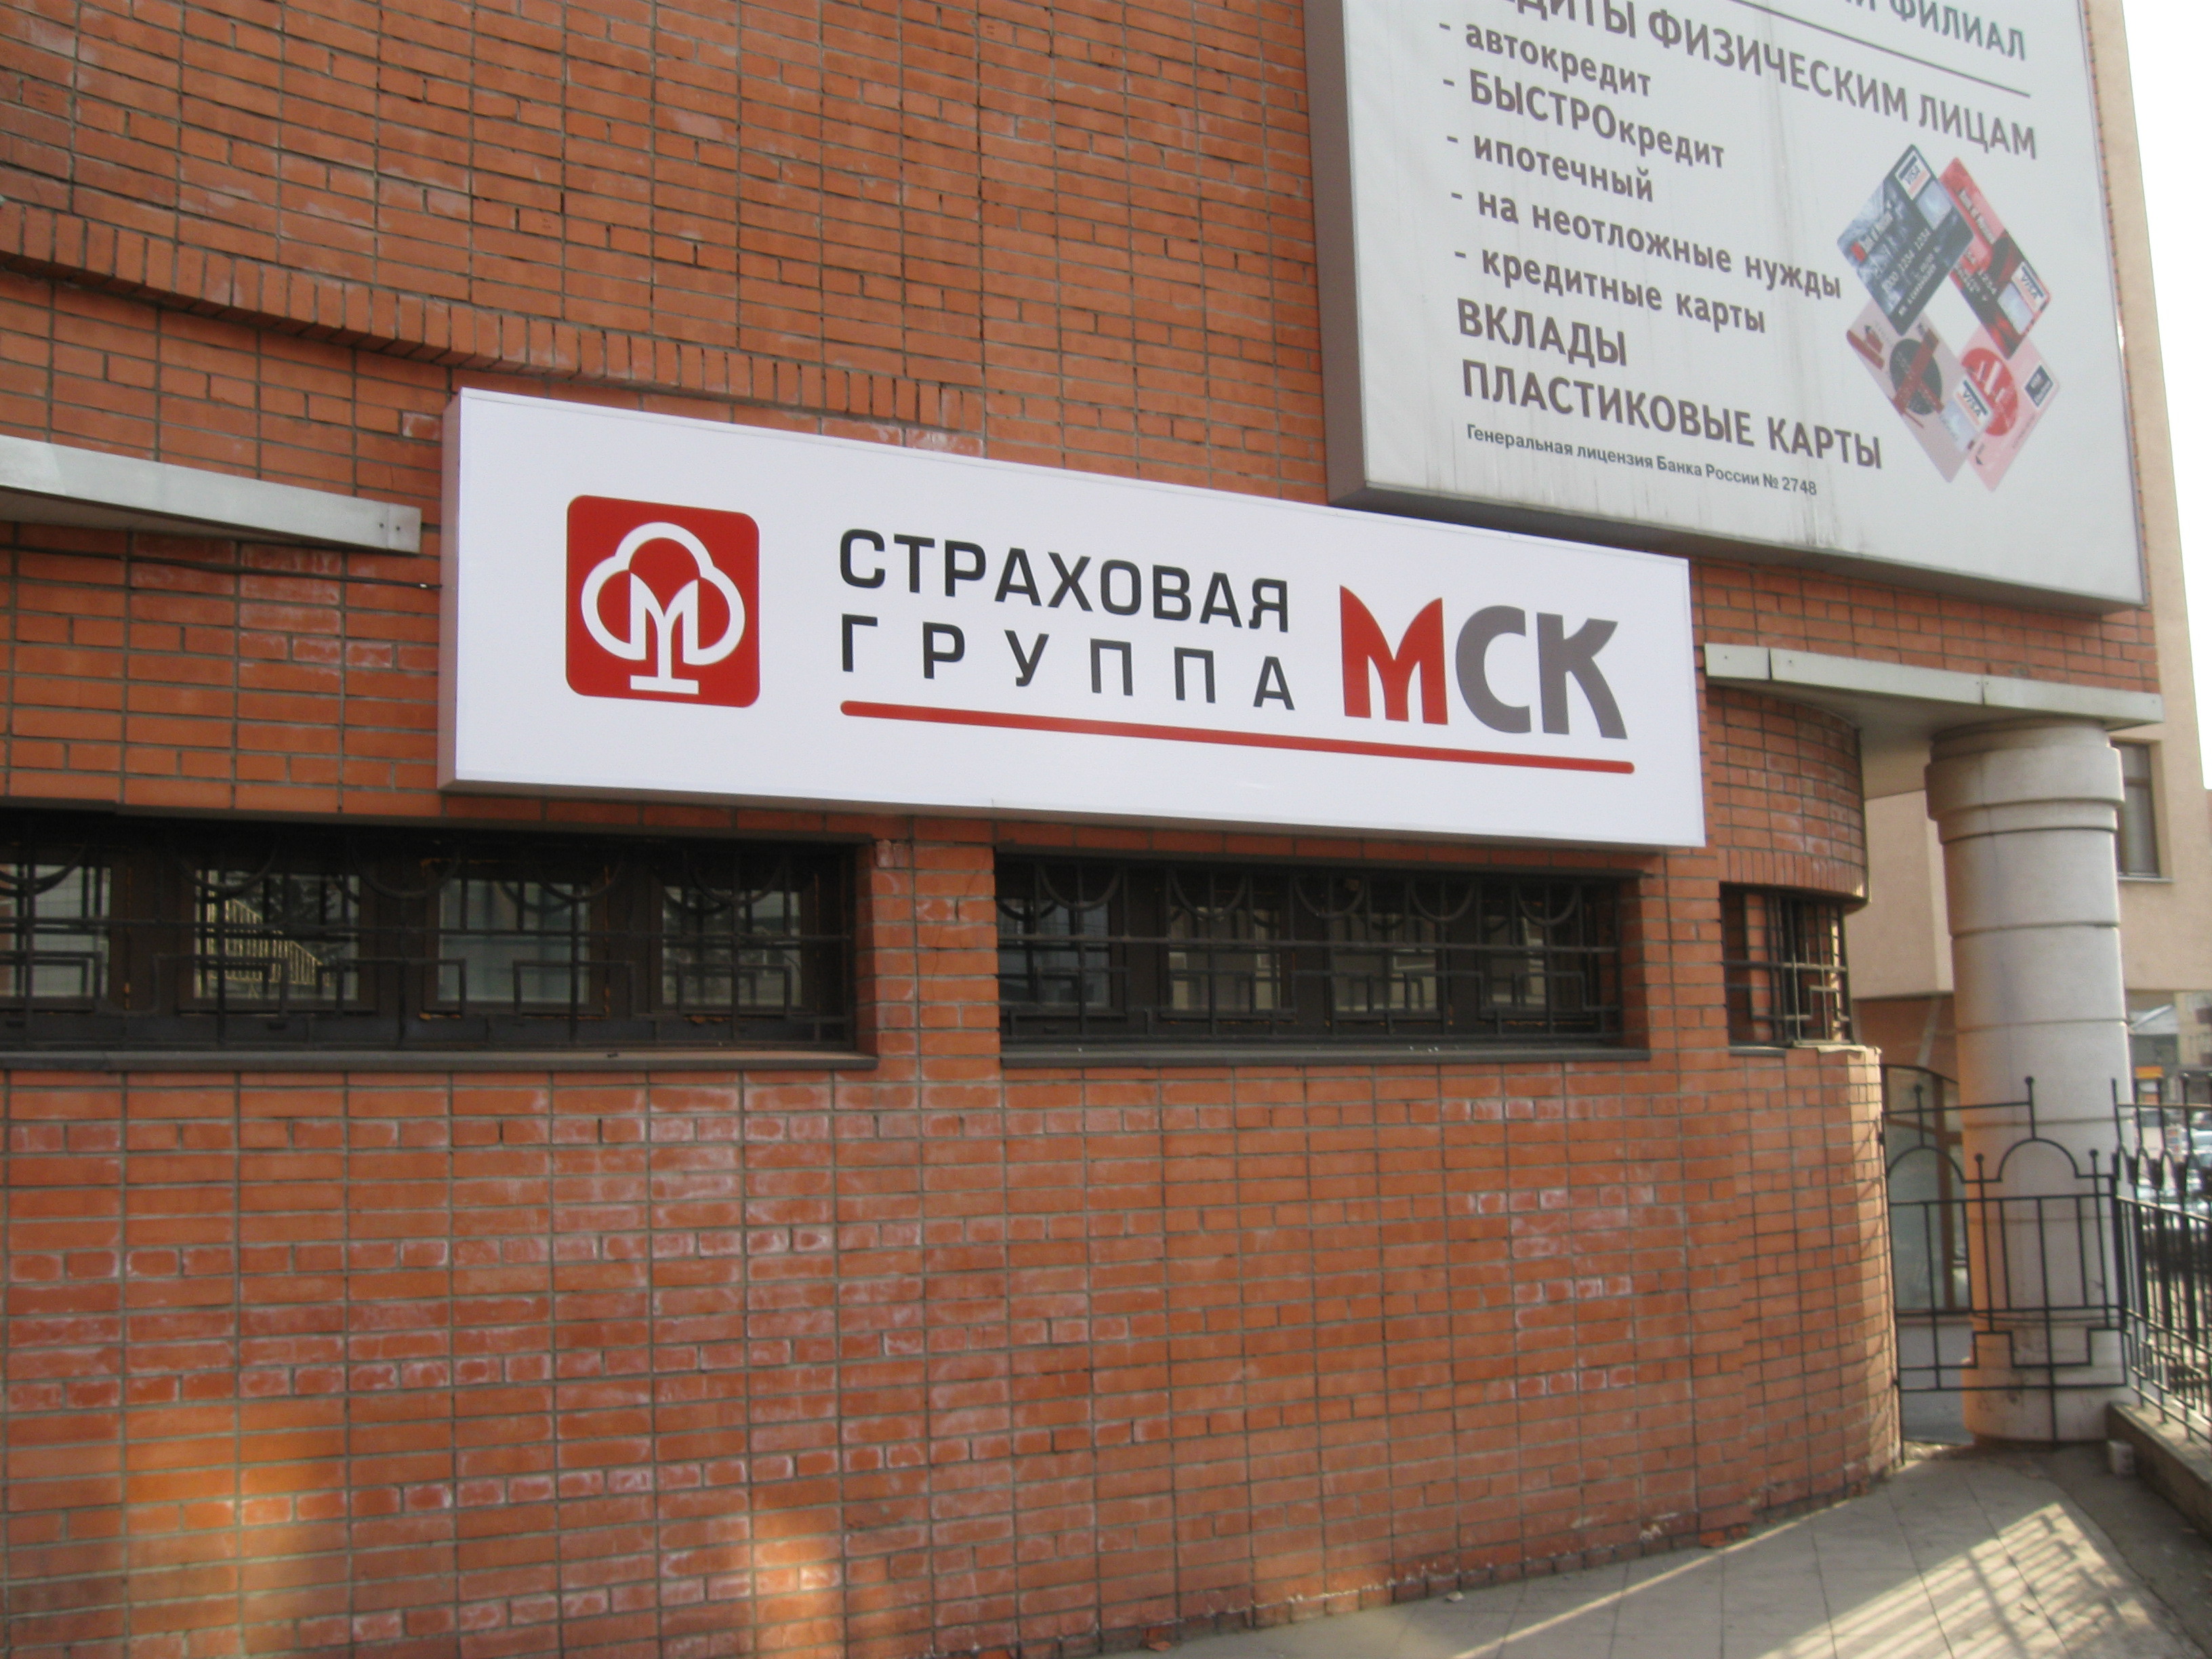 Страховая группа МСК закрыла филиал в Екатеринбурге